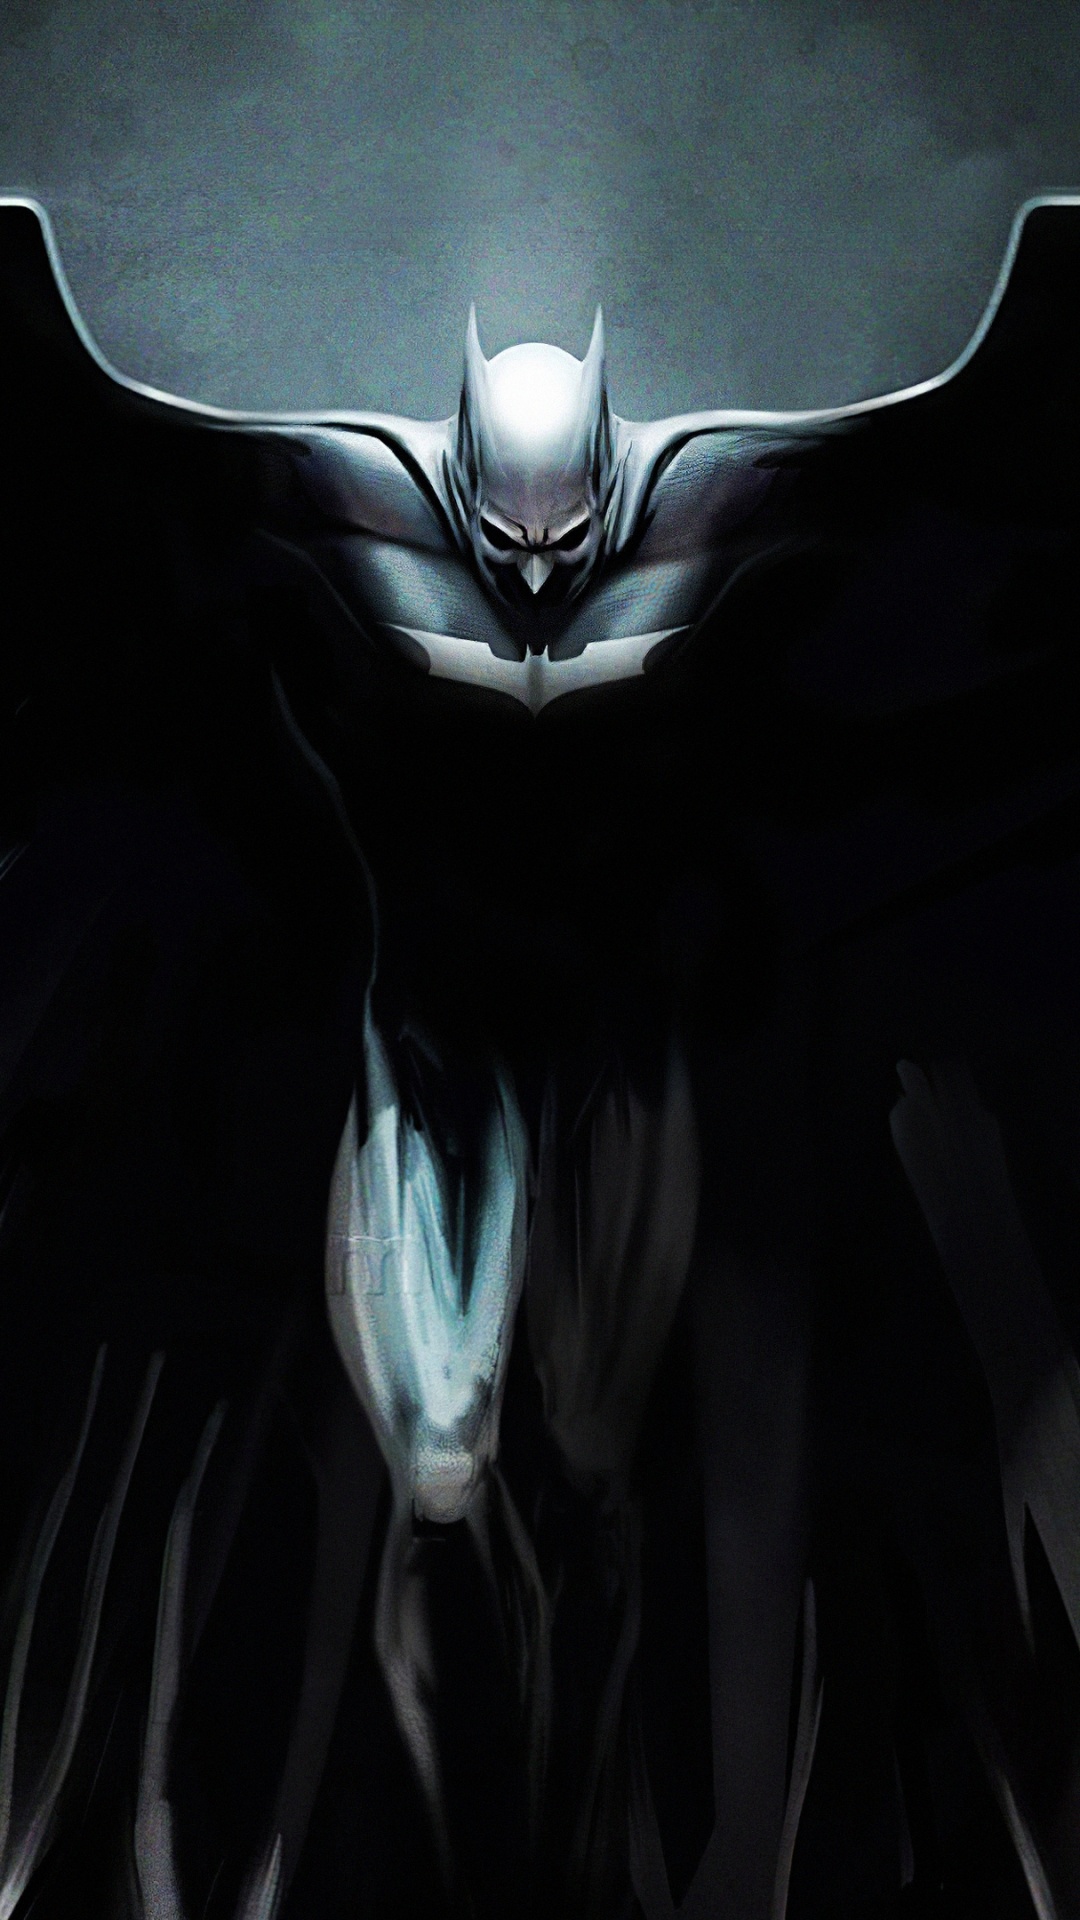 蝙蝠侠, 黑暗骑士的三部曲, 艺术, 分形技术, 翼 壁纸 1080x1920 允许